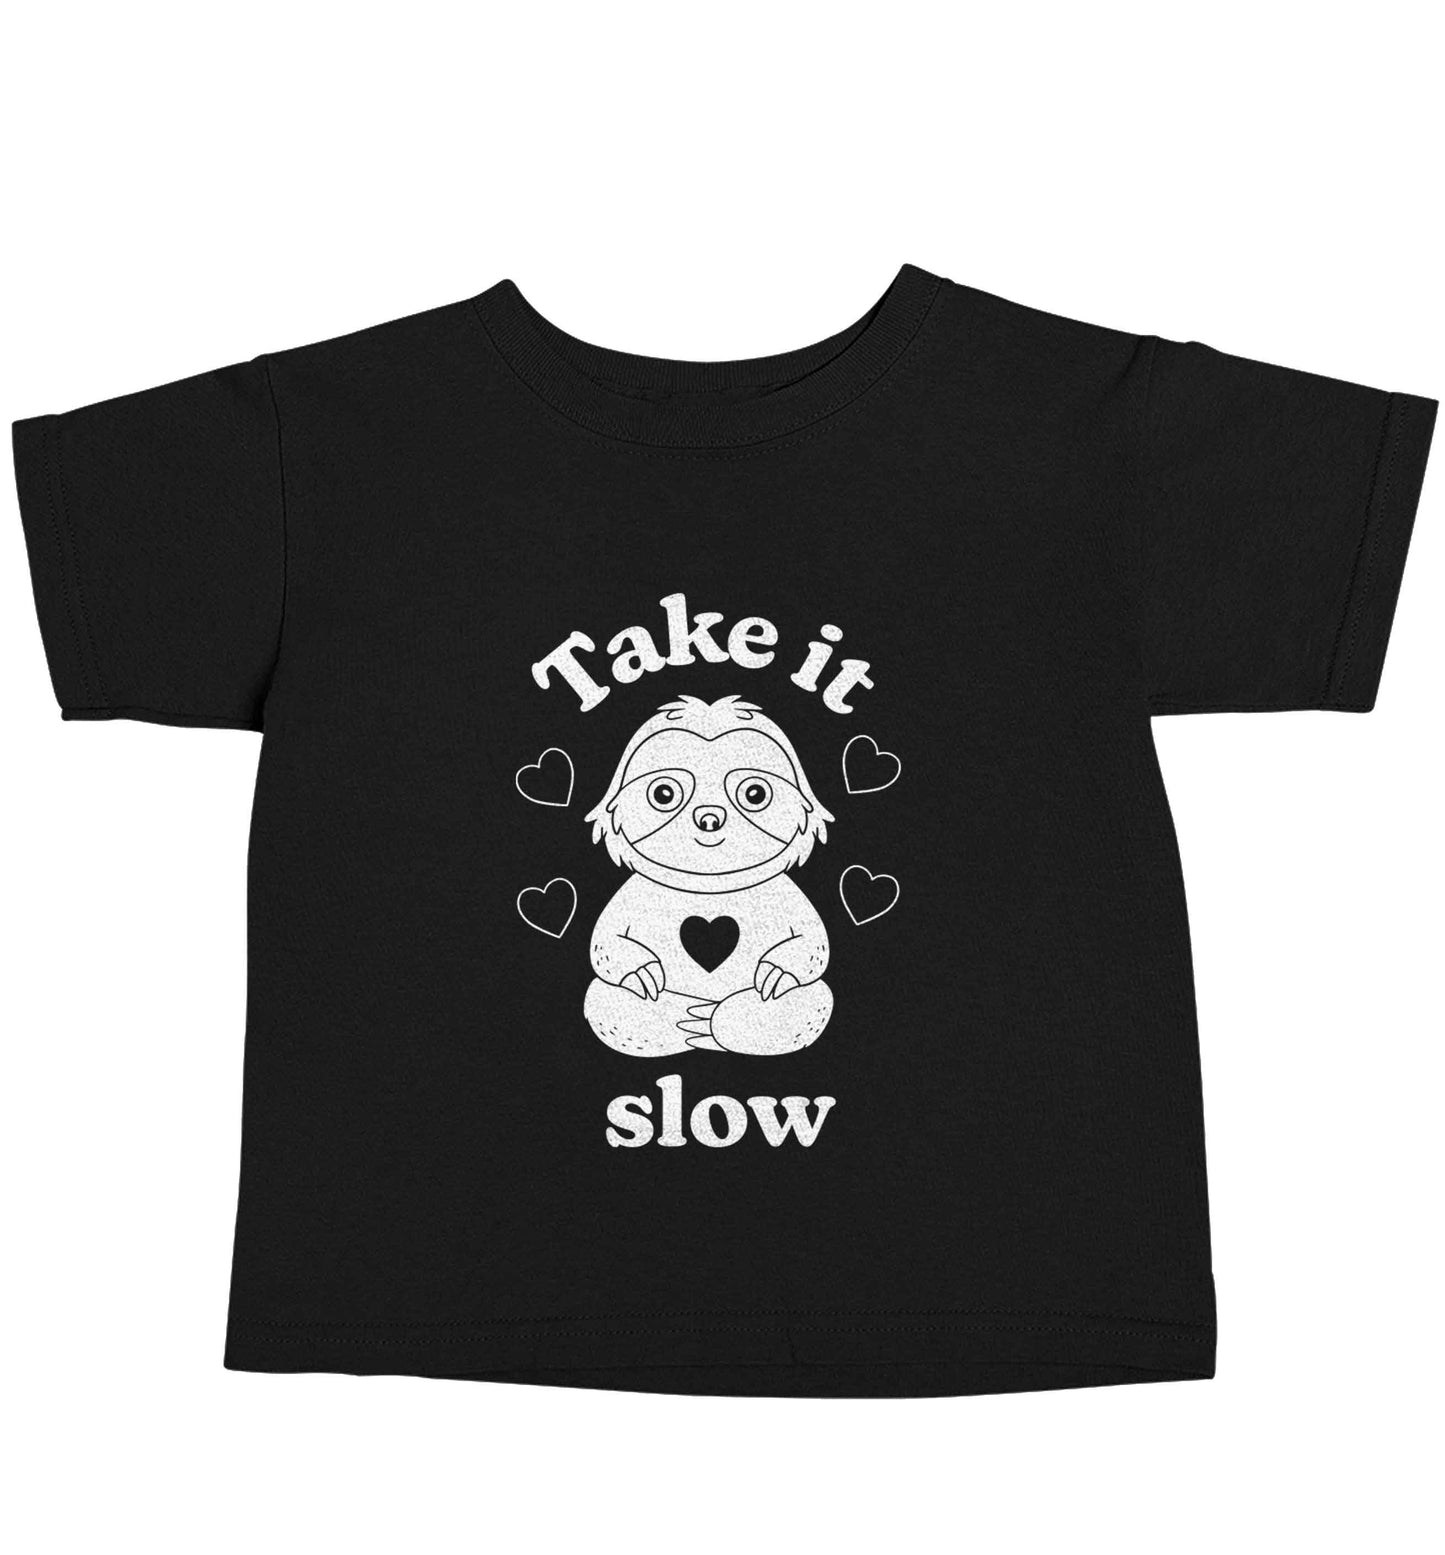 Take it slow Black baby toddler Tshirt 2 years